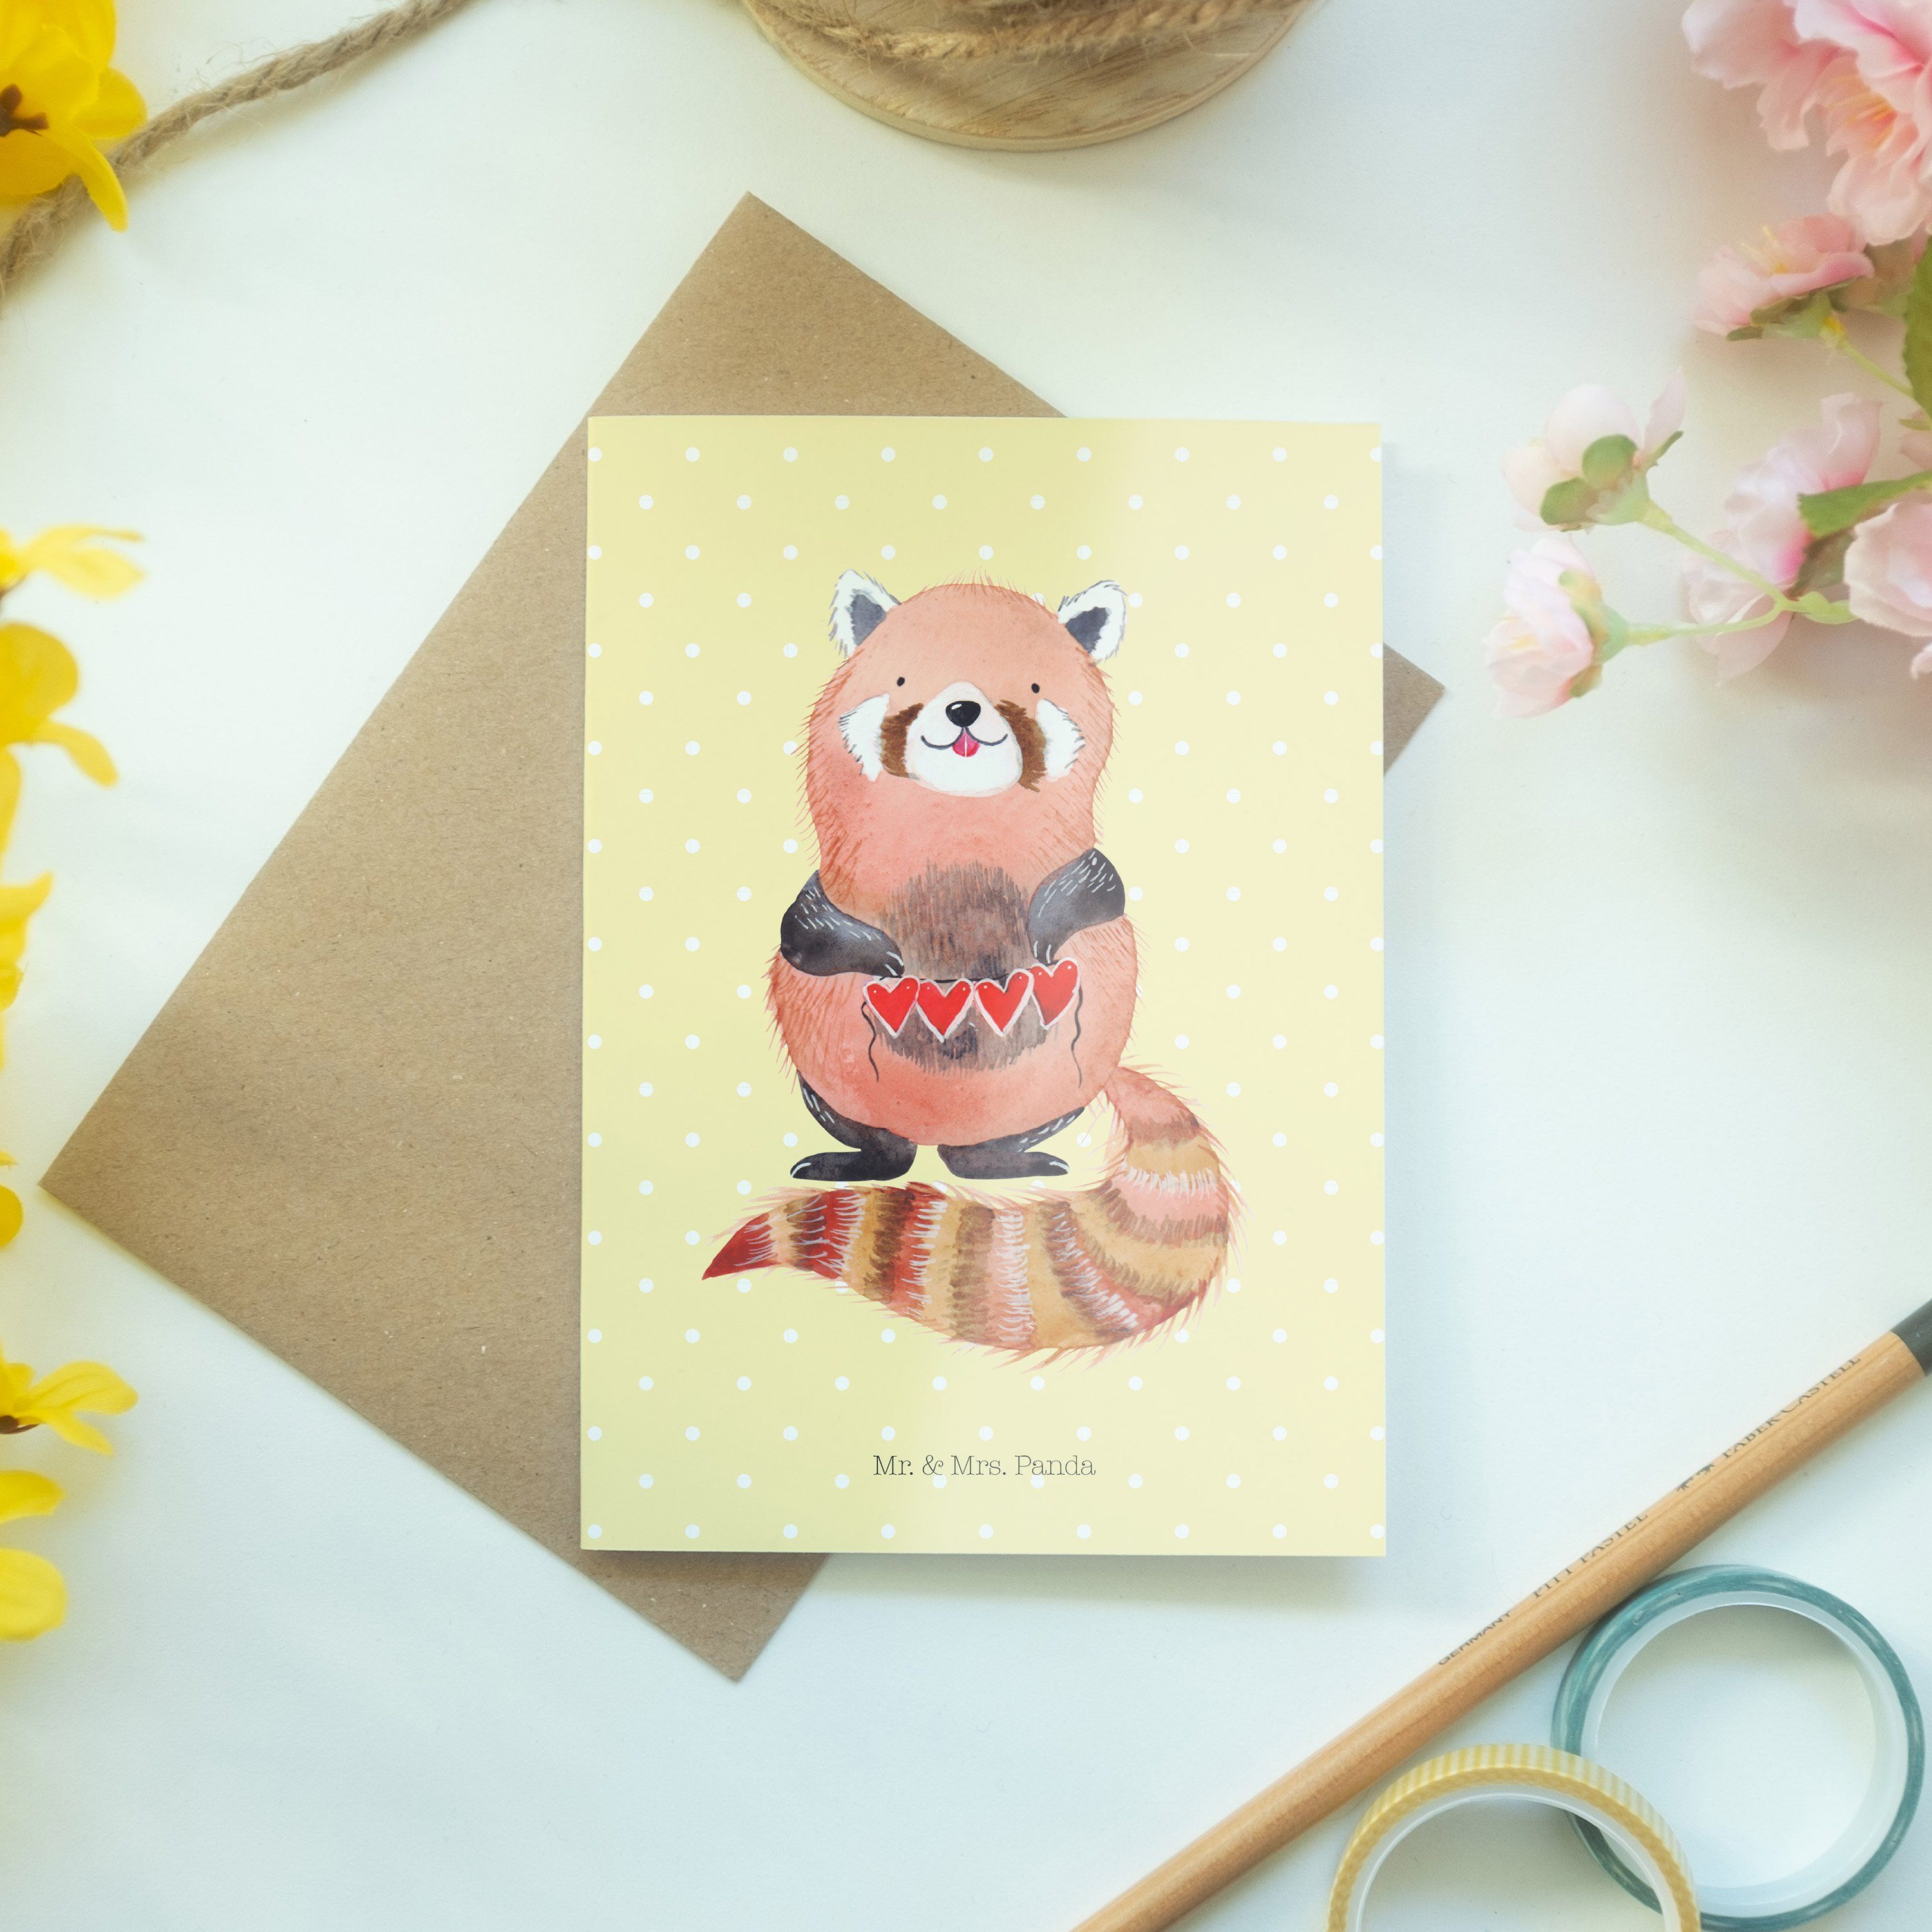 Mr. Roter Pastell & - Einladungskarte, Geschenk, Mrs. Panda Gelb - Grußkarte Panda Herz Tiere,